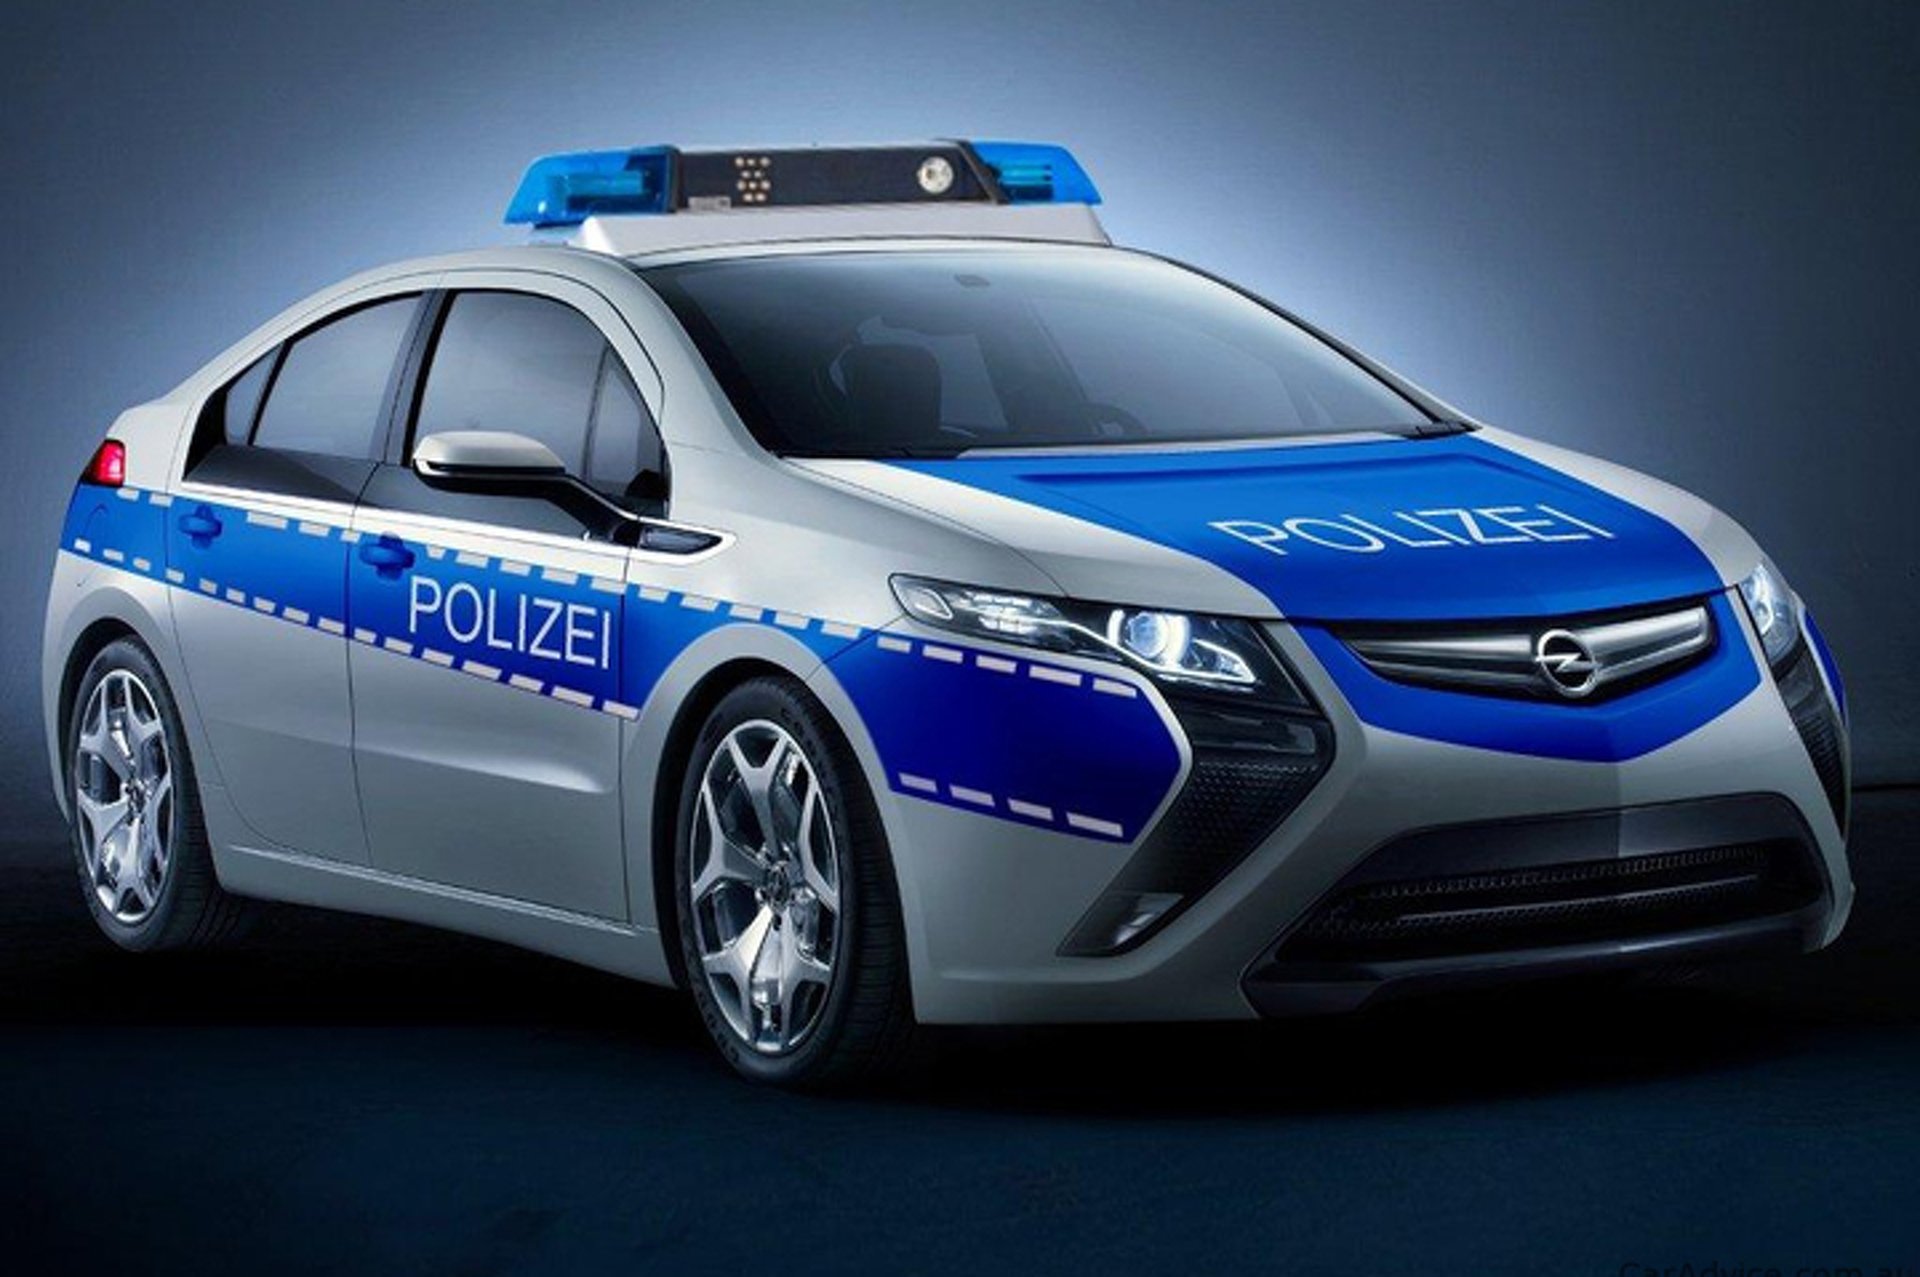 Синяя полицейская машина. Opel Police. Опель Polizei. Полицейская машина. Машина "полиция".